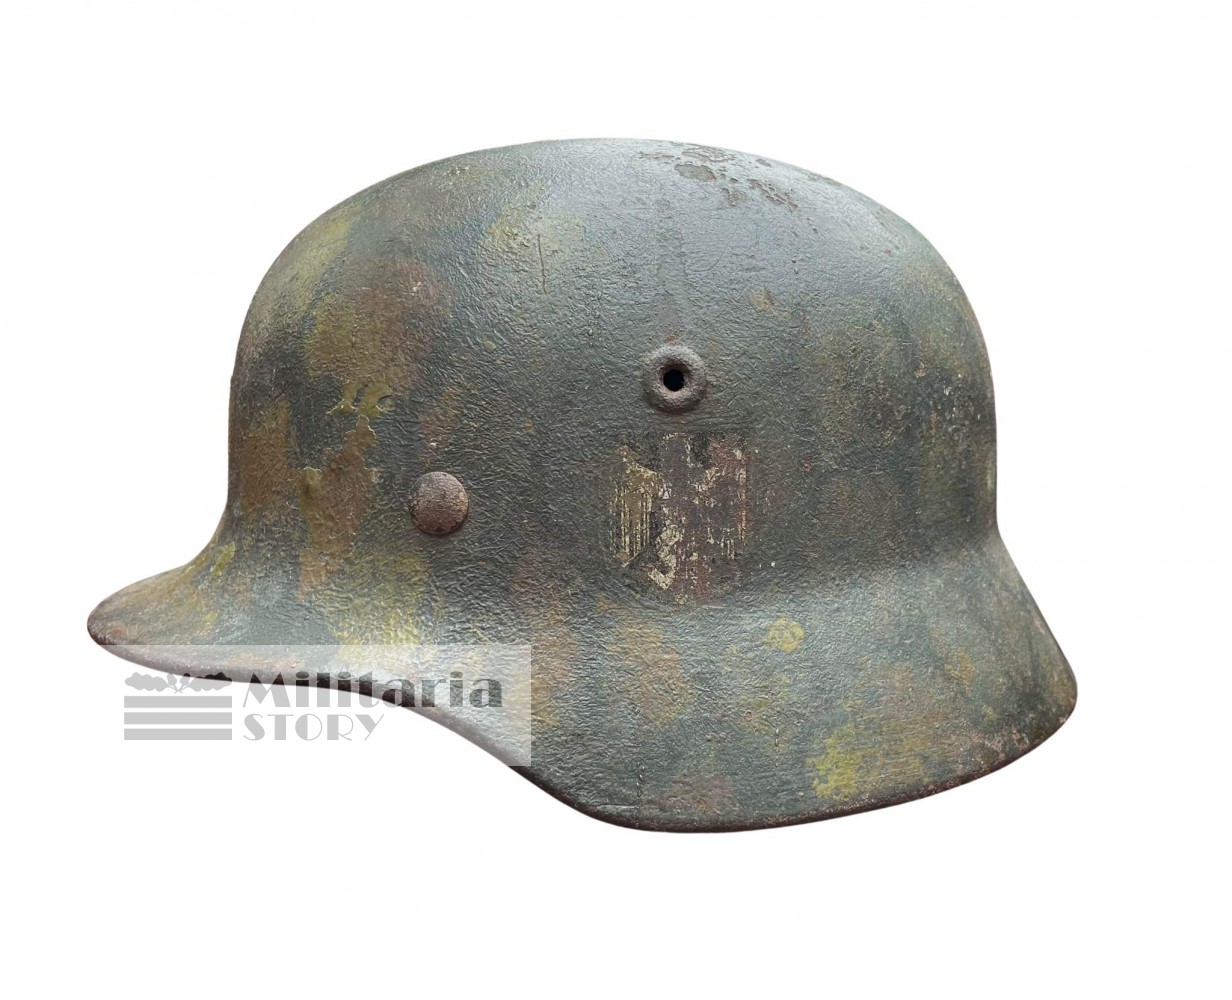 M40 Heer Tortoise camo helmet - M40 Heer Tortoise camo helmet: Third Reich Headgear